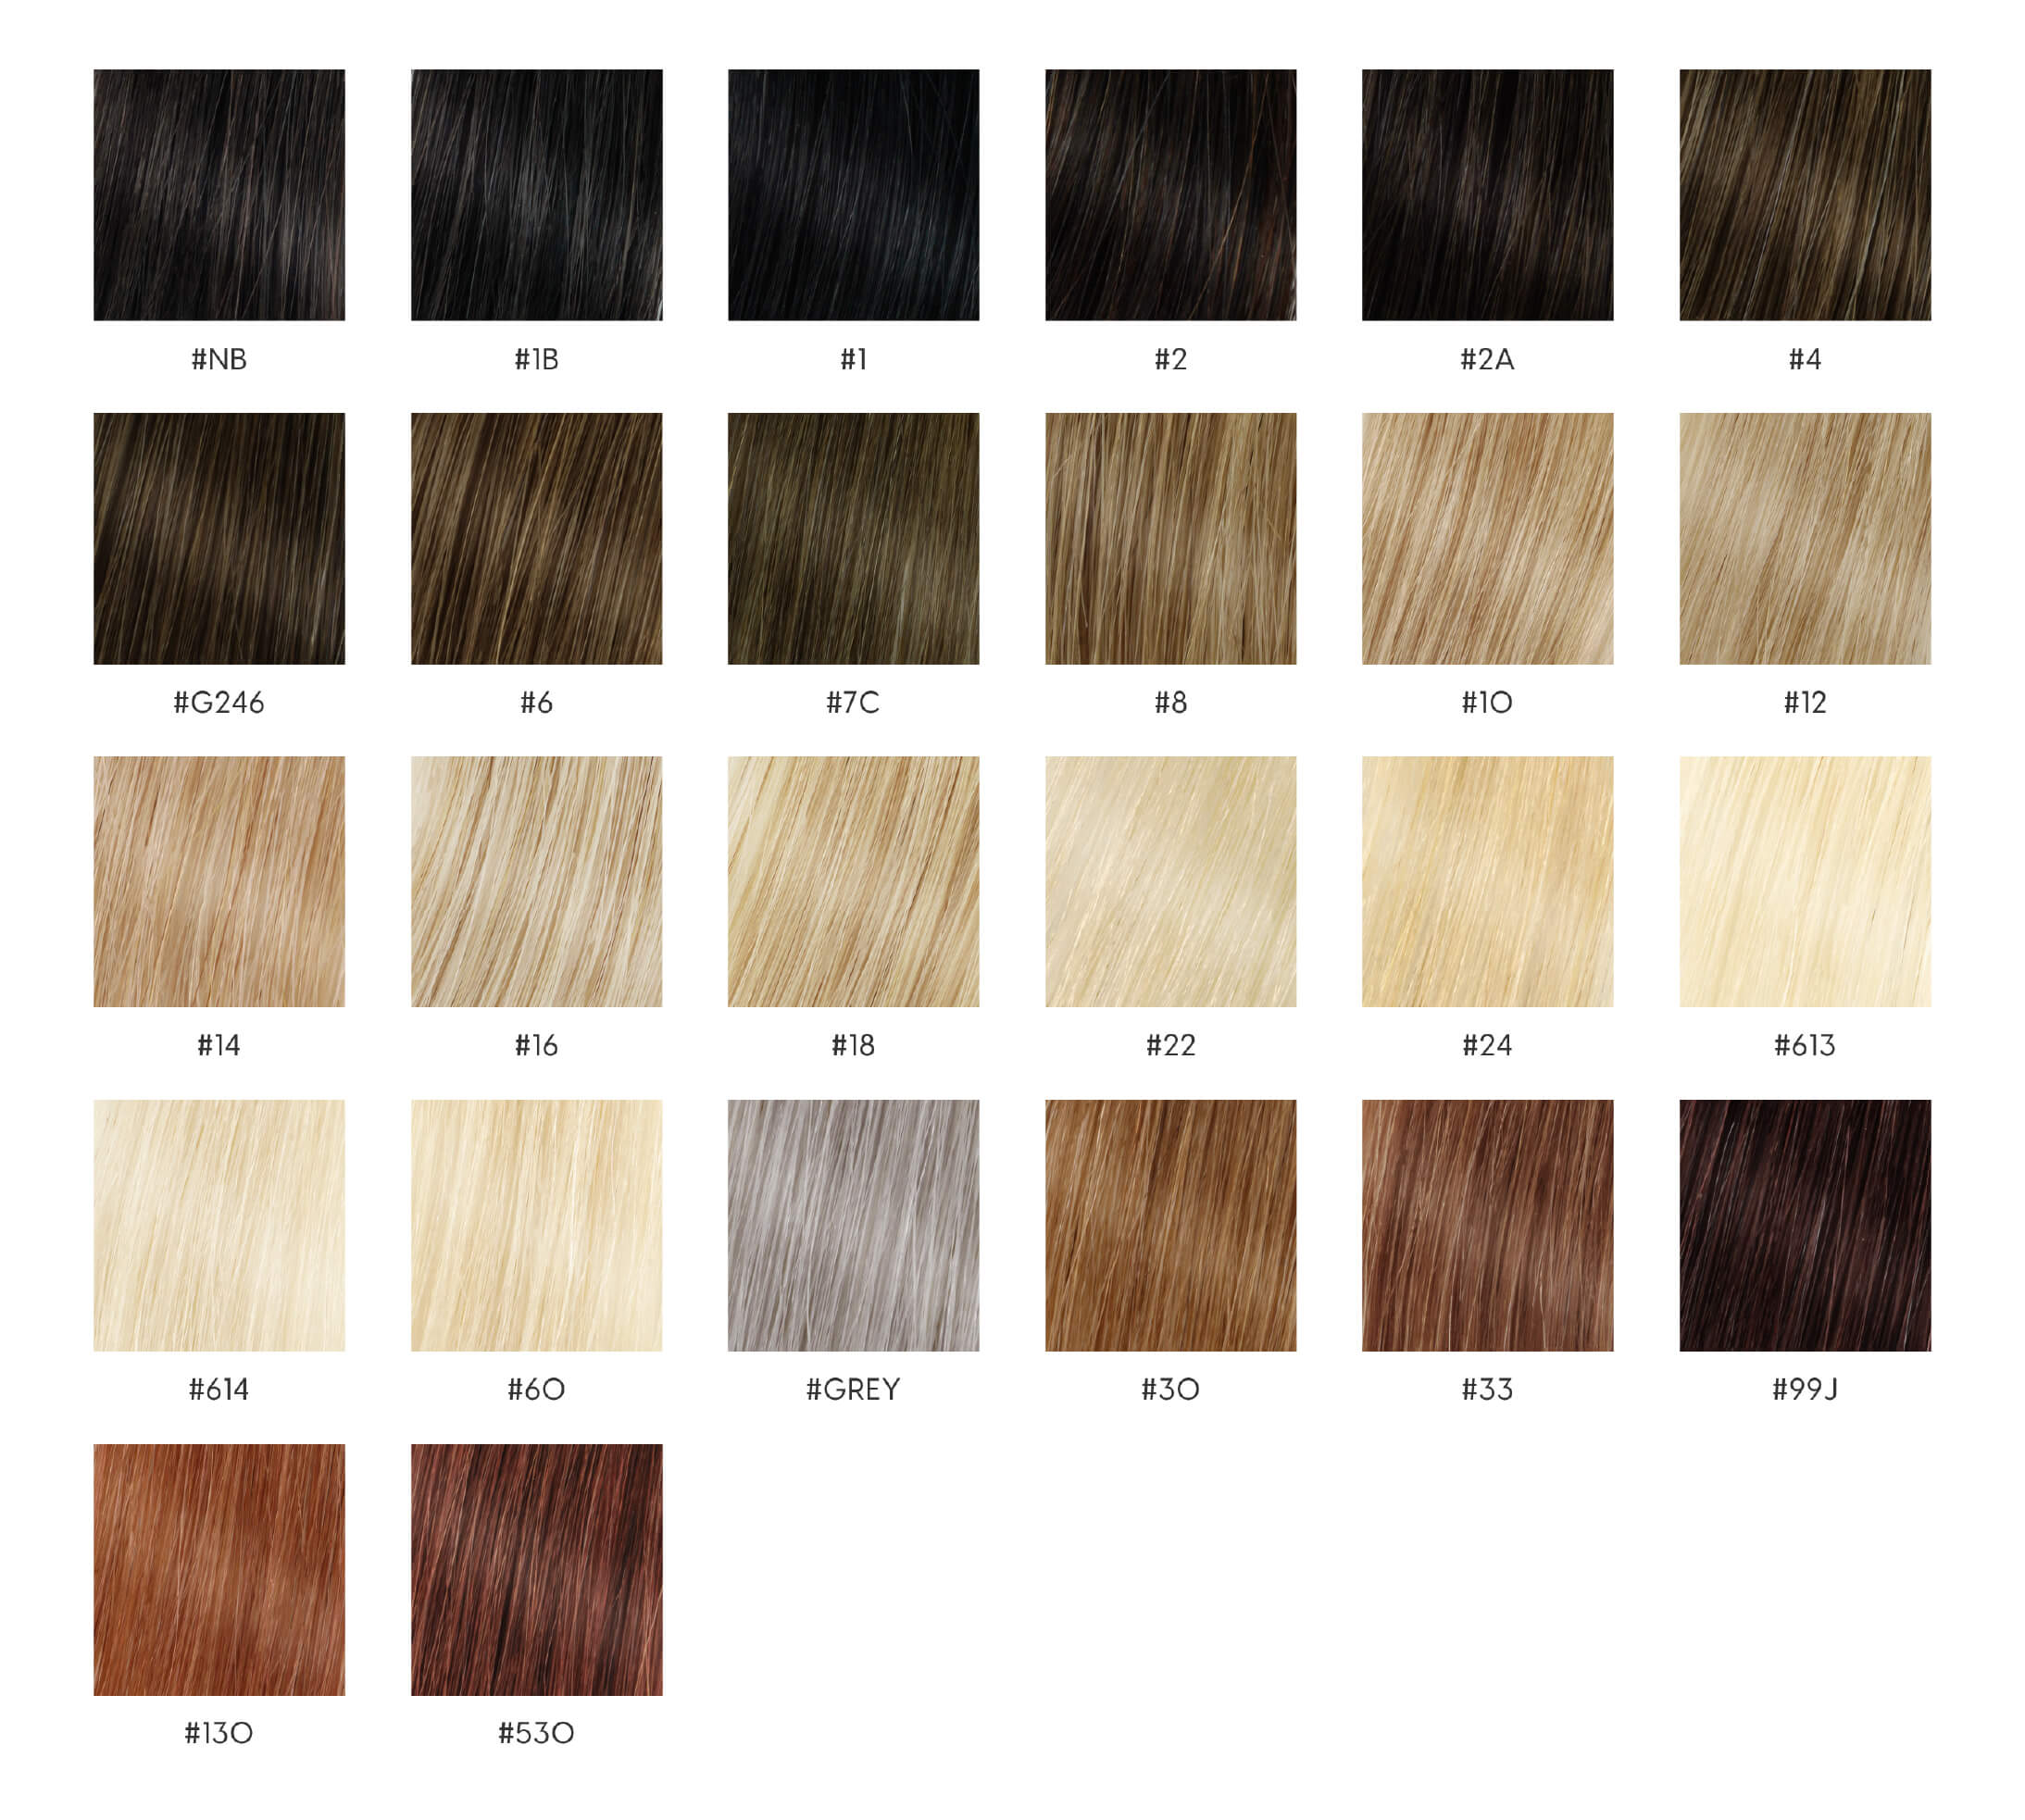 Tableau des couleurs des cheveux humains NT pour femmes